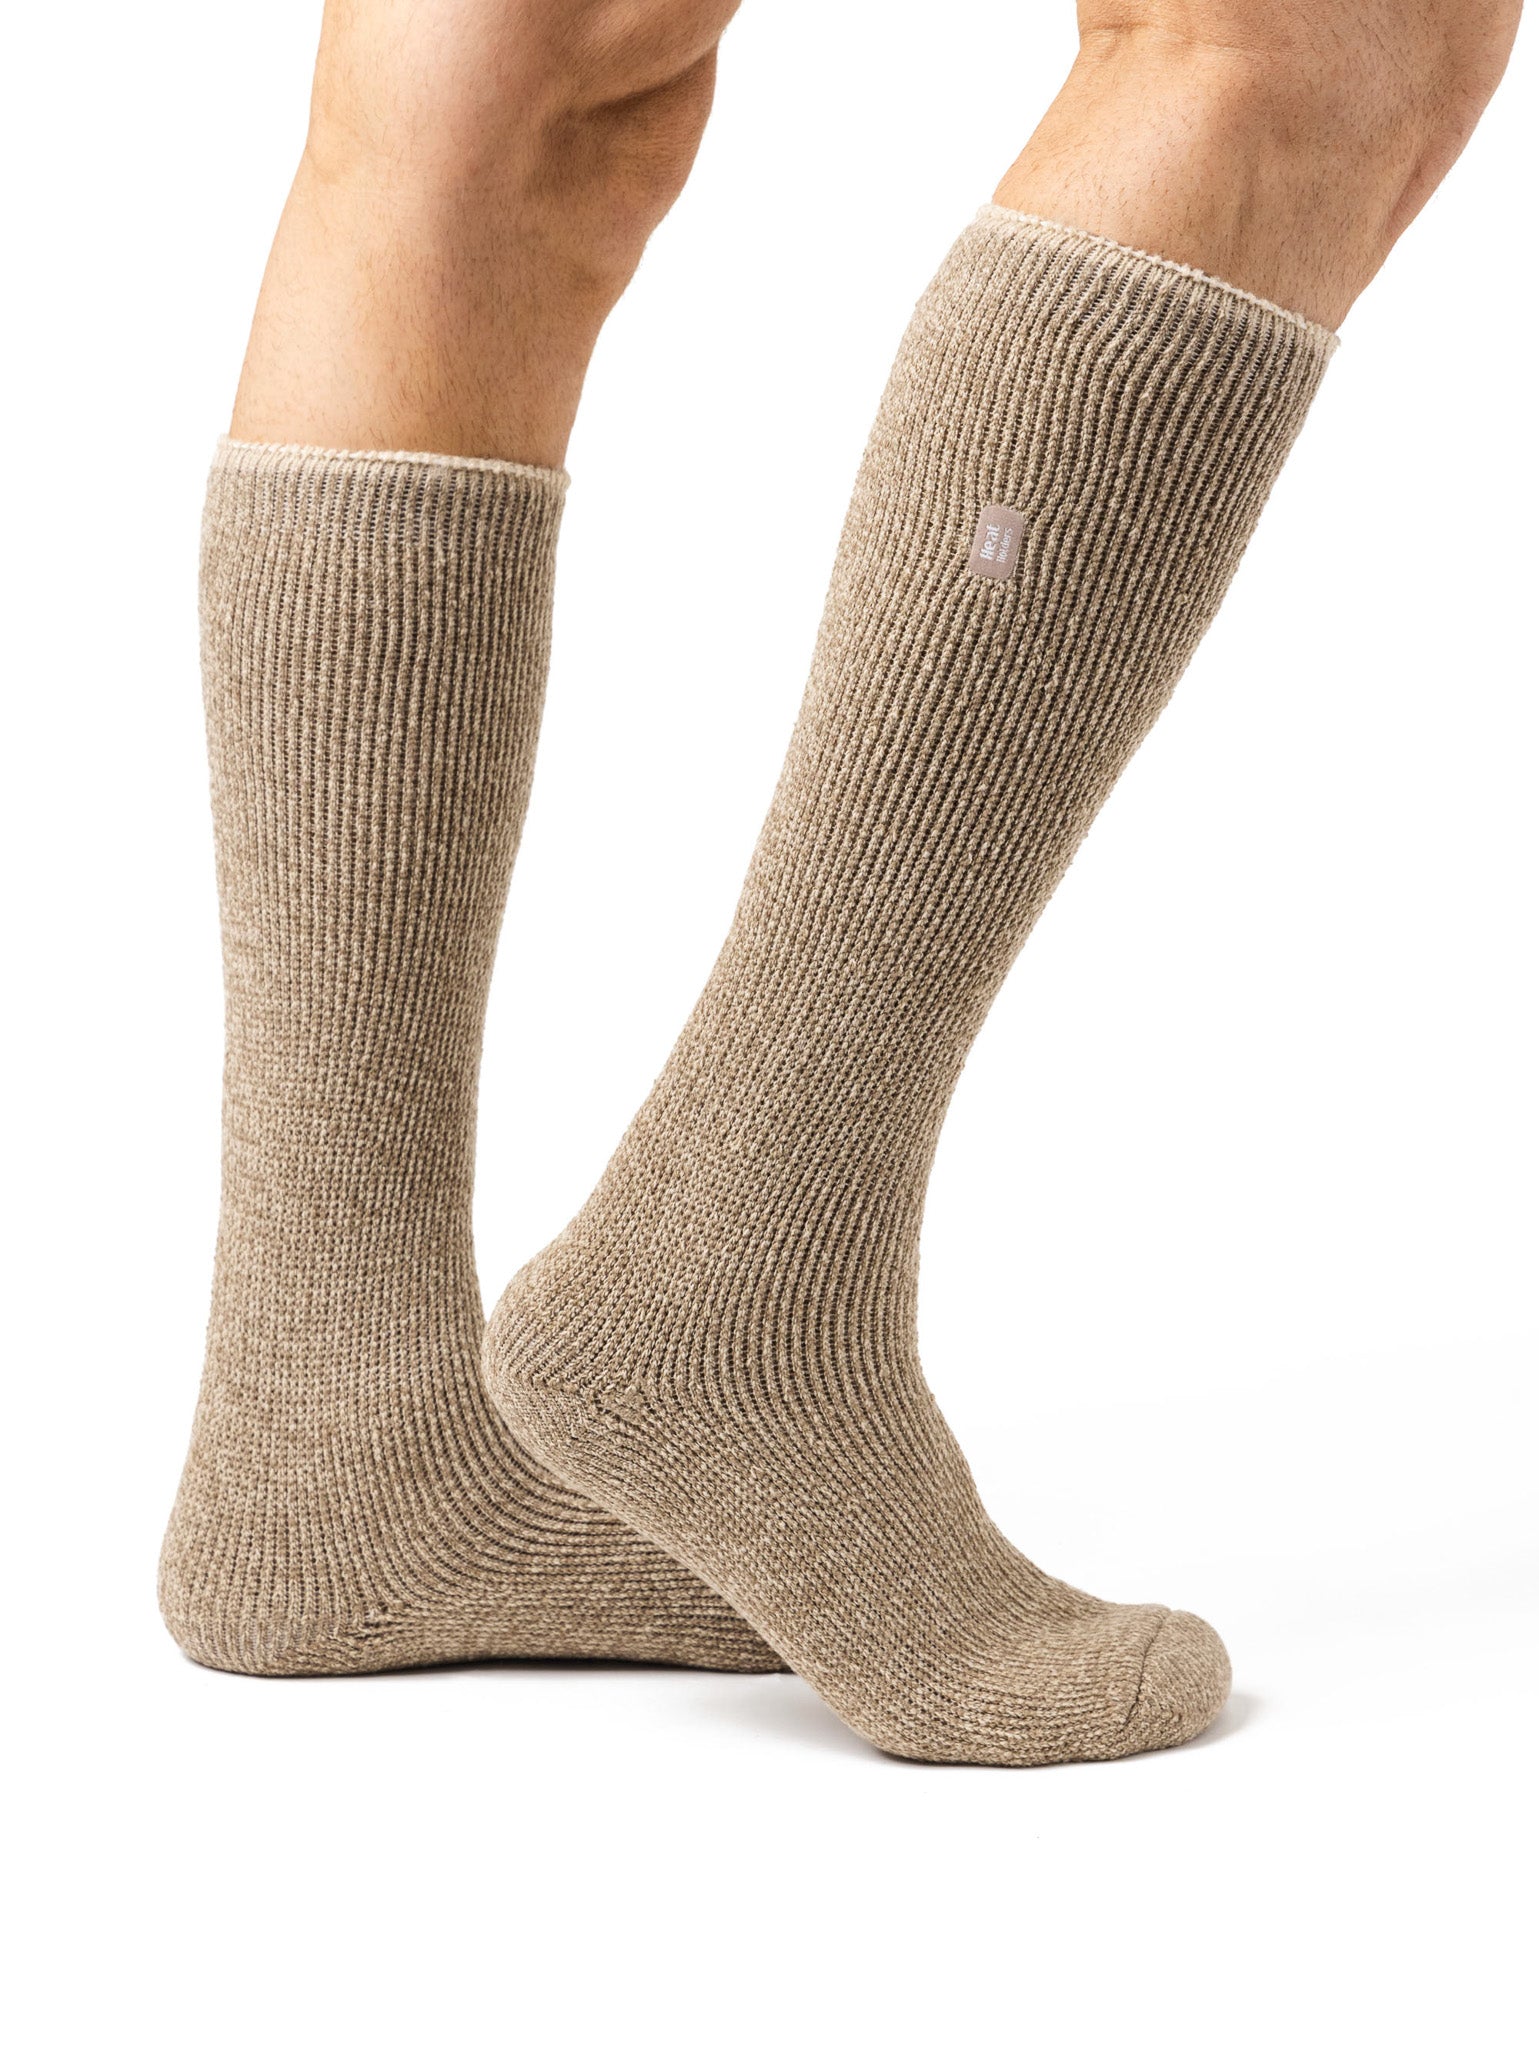 HEAT HOLDERS Merino Wool Long Thermal Sock-Mens 6-11